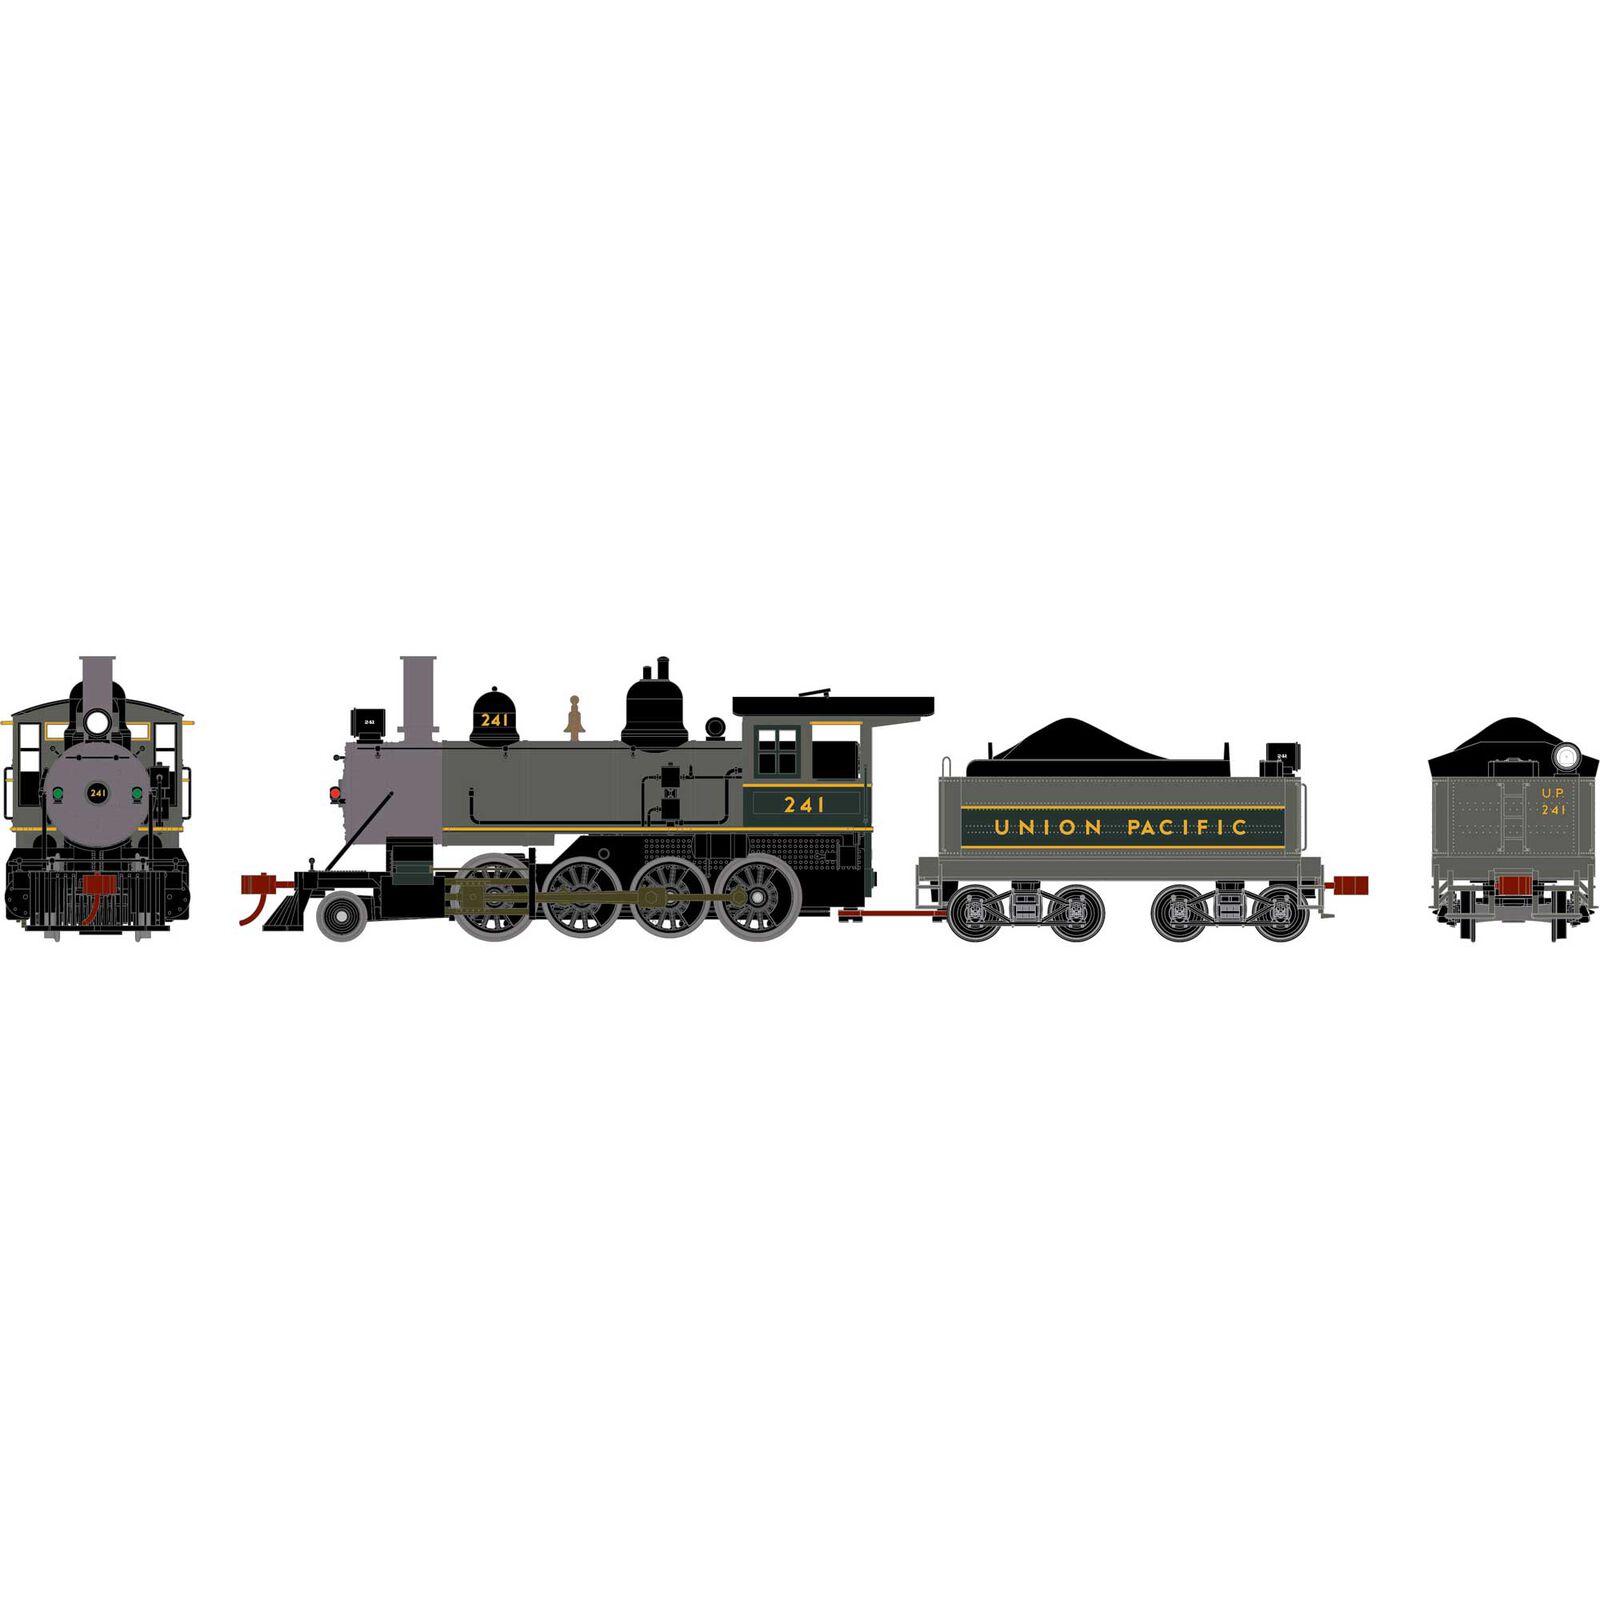 HO Old Time 2-8-0 Locomotive, UP #241